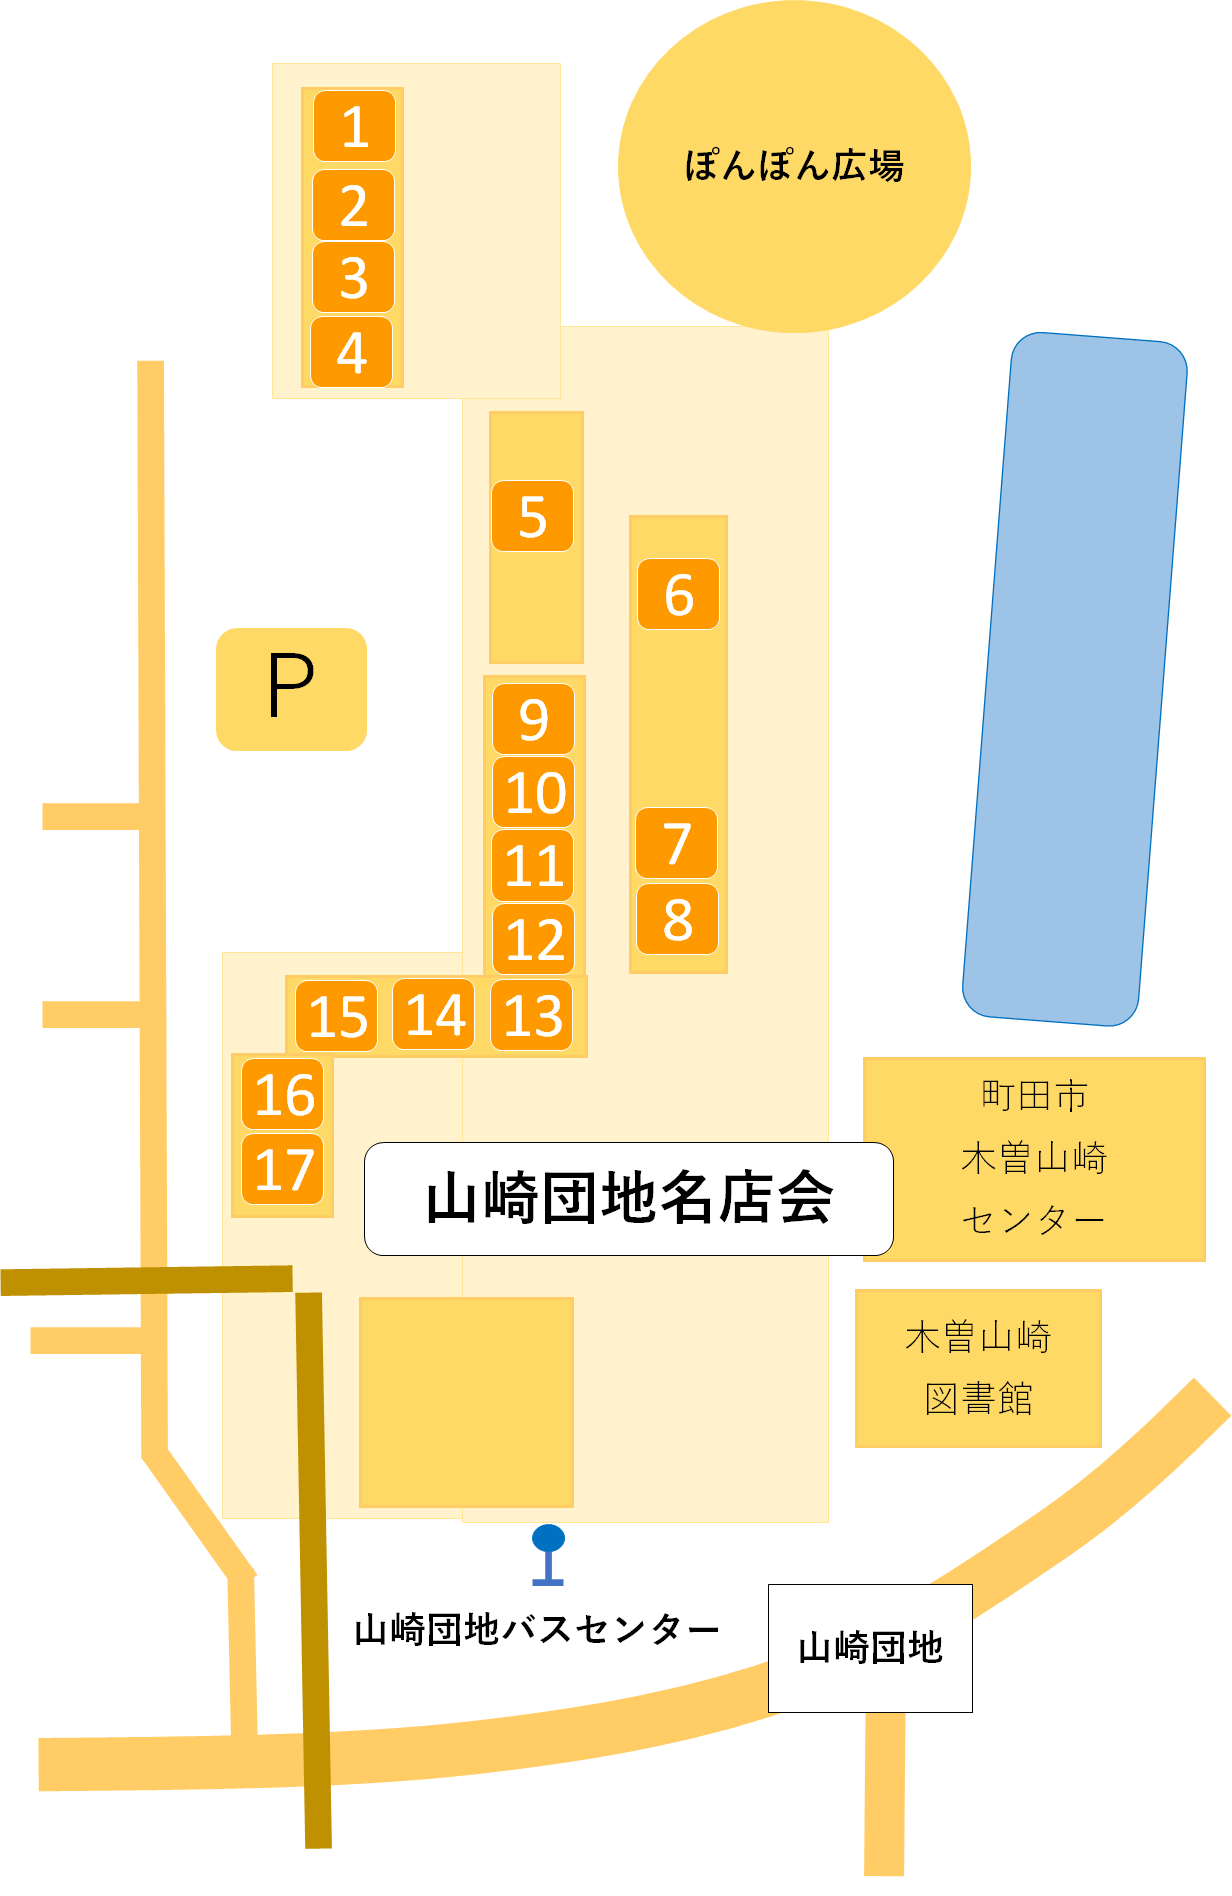 山崎団地名店会の地図